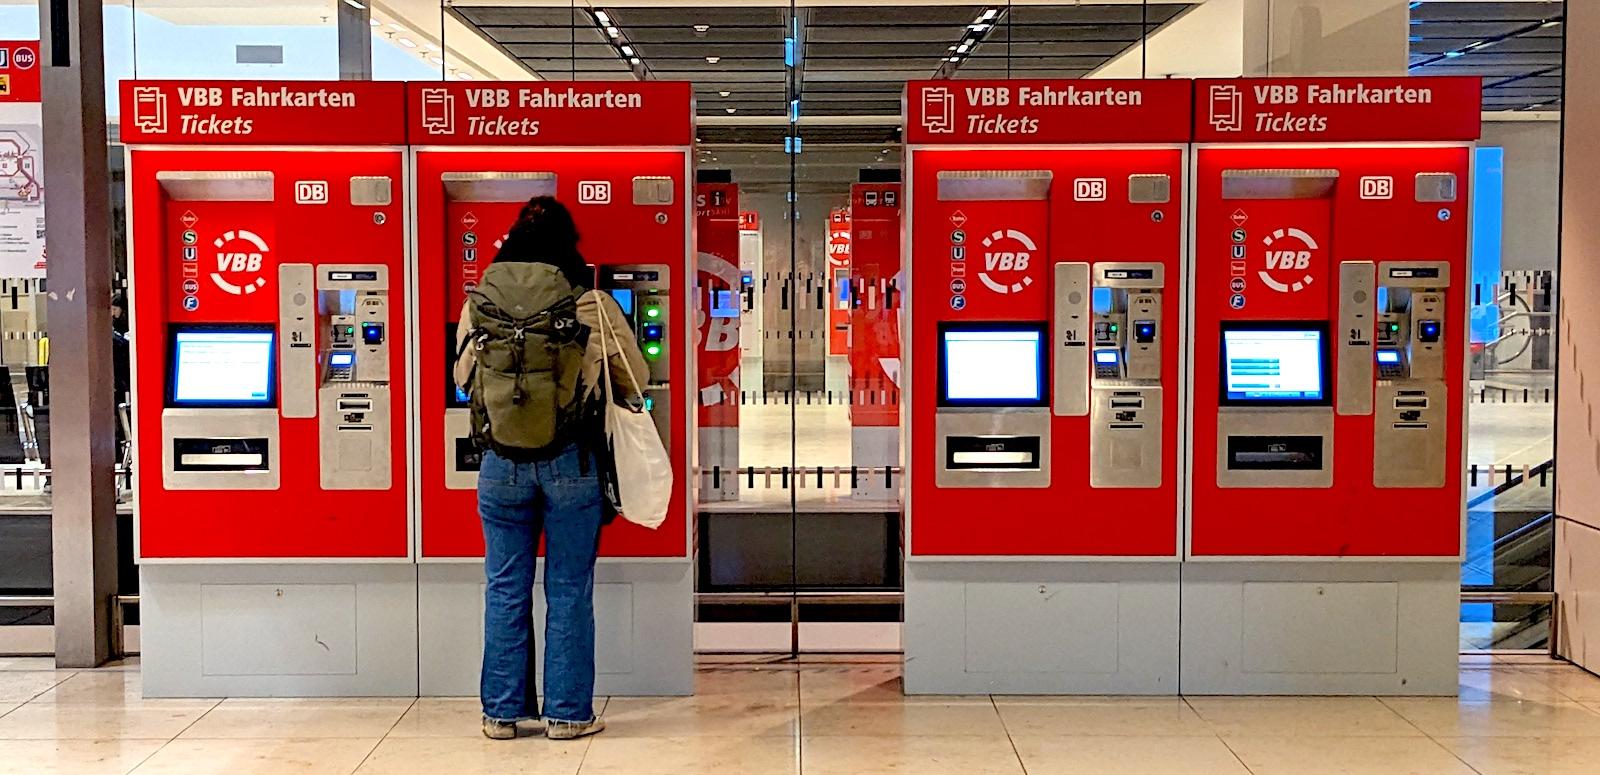 A public transit ticket machine at the Berlin-Brandenburg airport